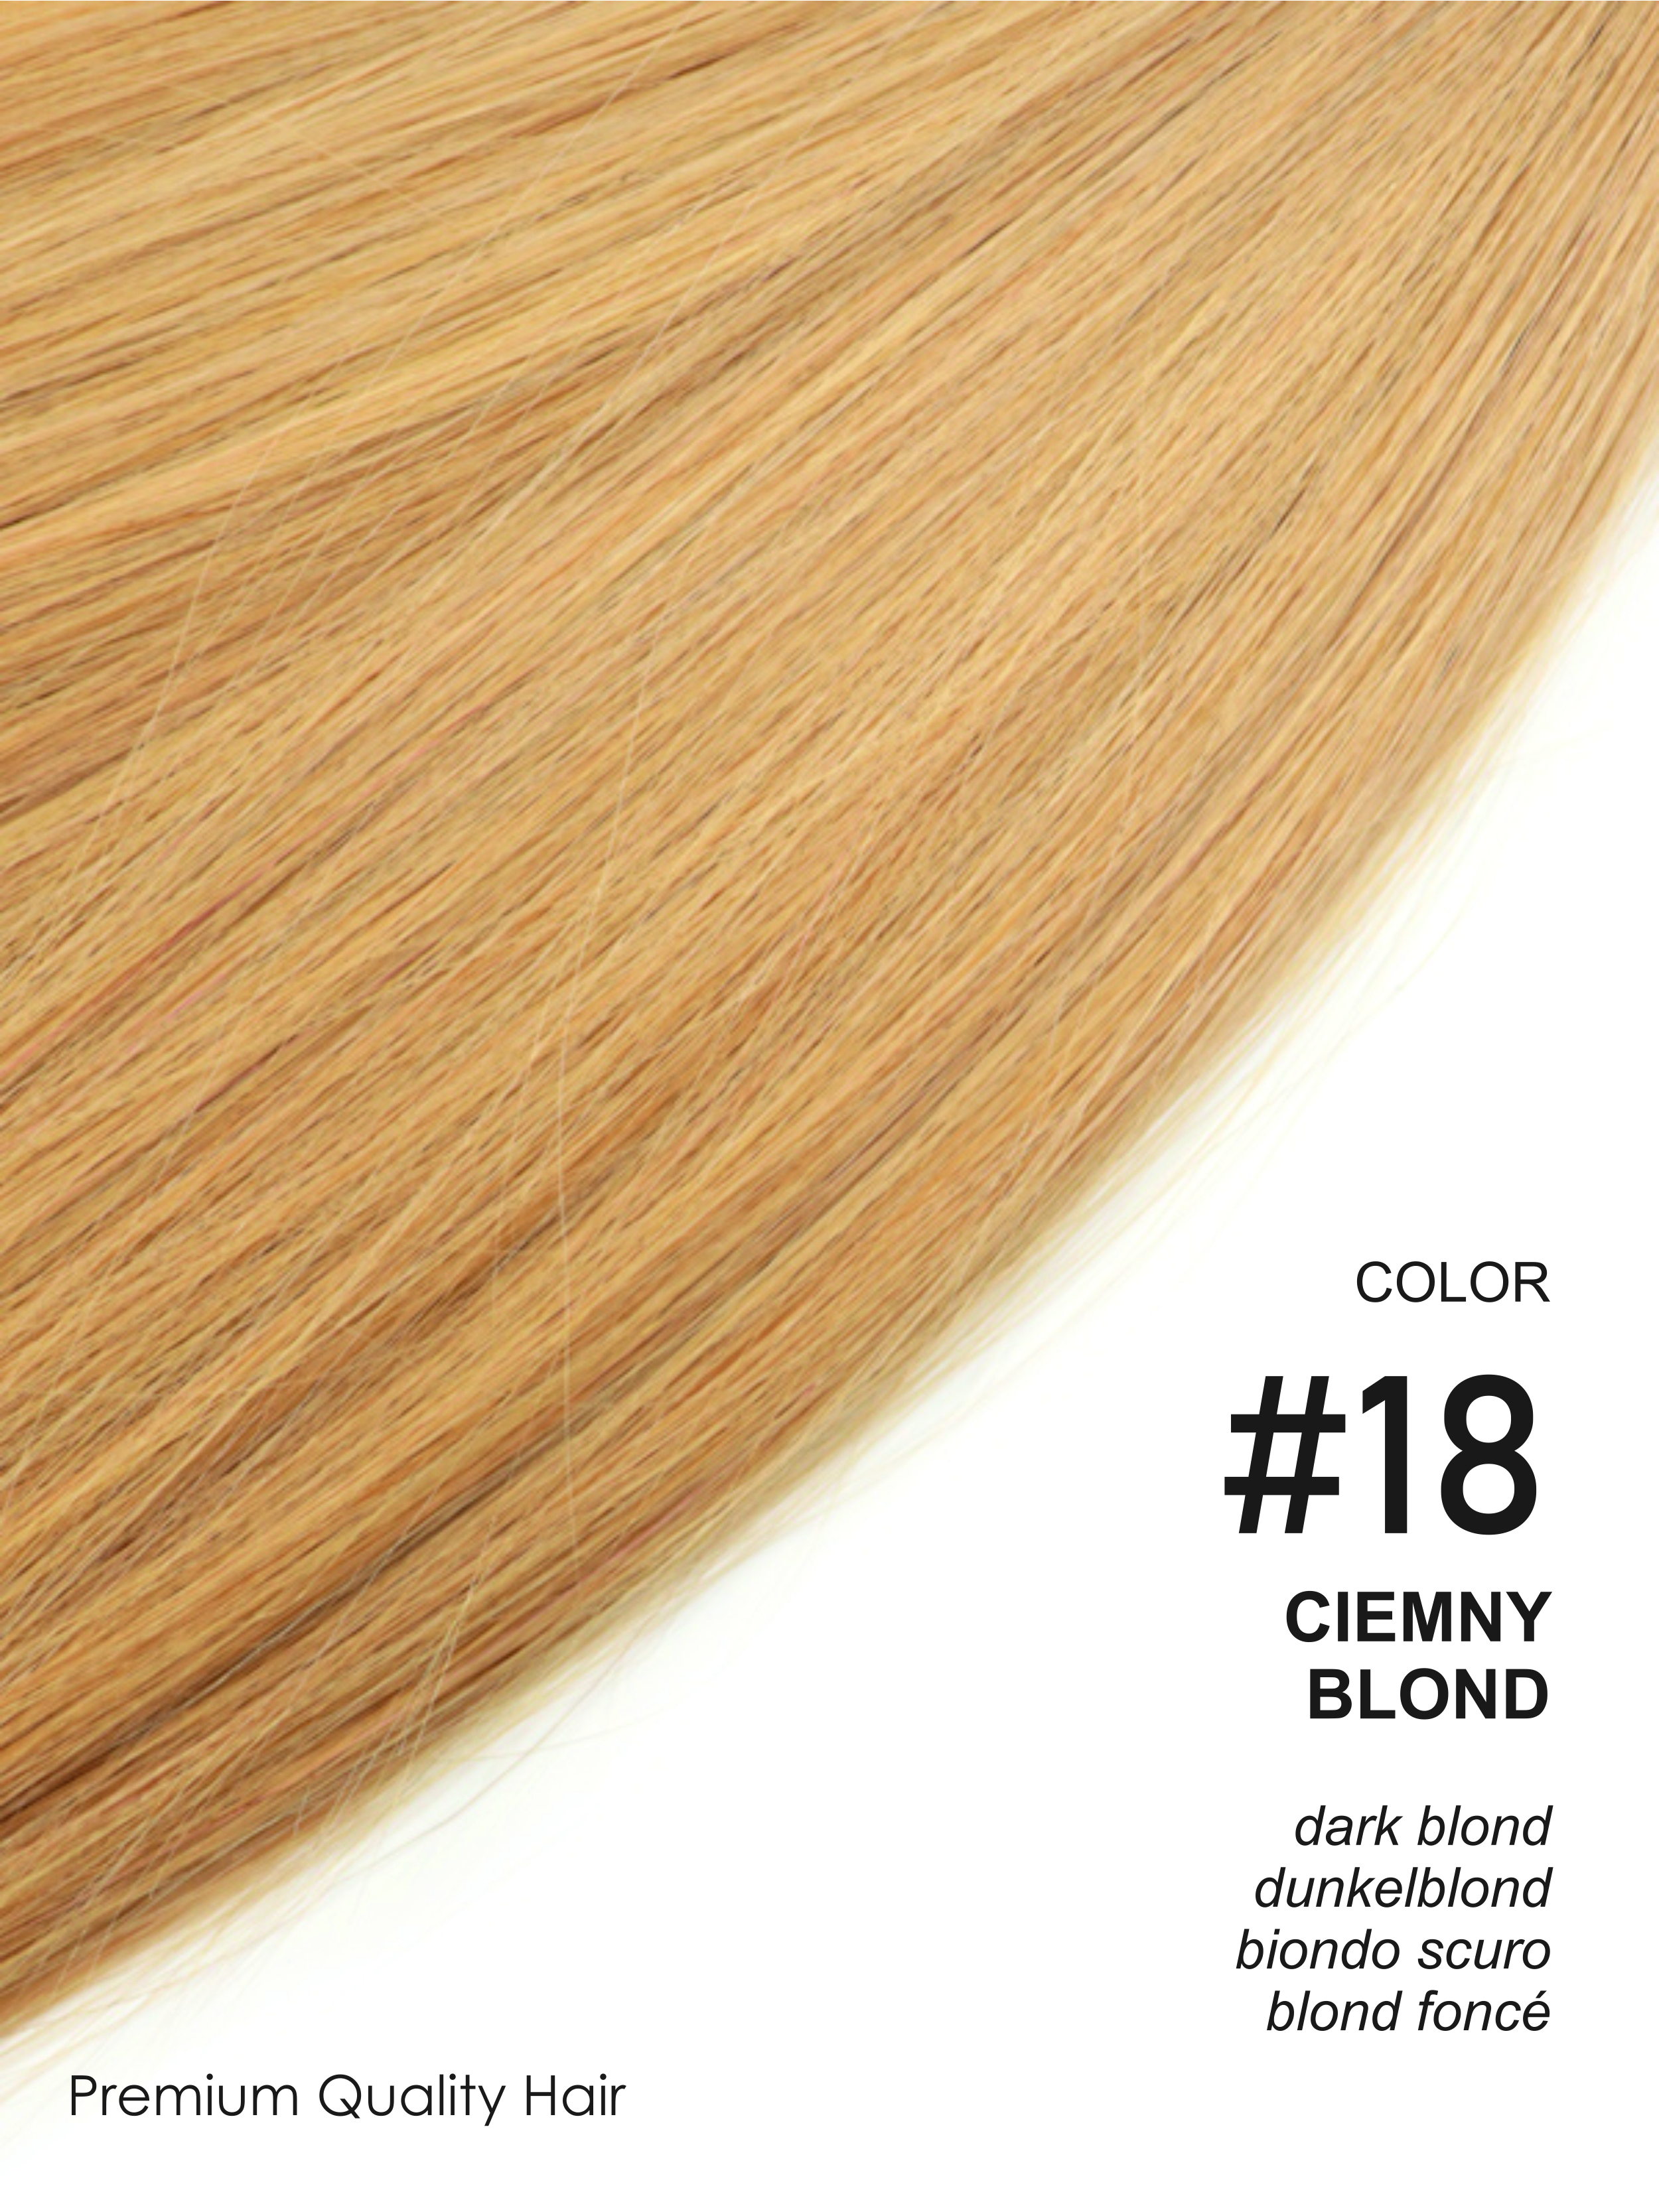 Beauty for You Slovanské vlasy - rovné prameny s plochým hrotem, vlasy 51 cm, pro keratinovou nebo ultrazvukovou metodu